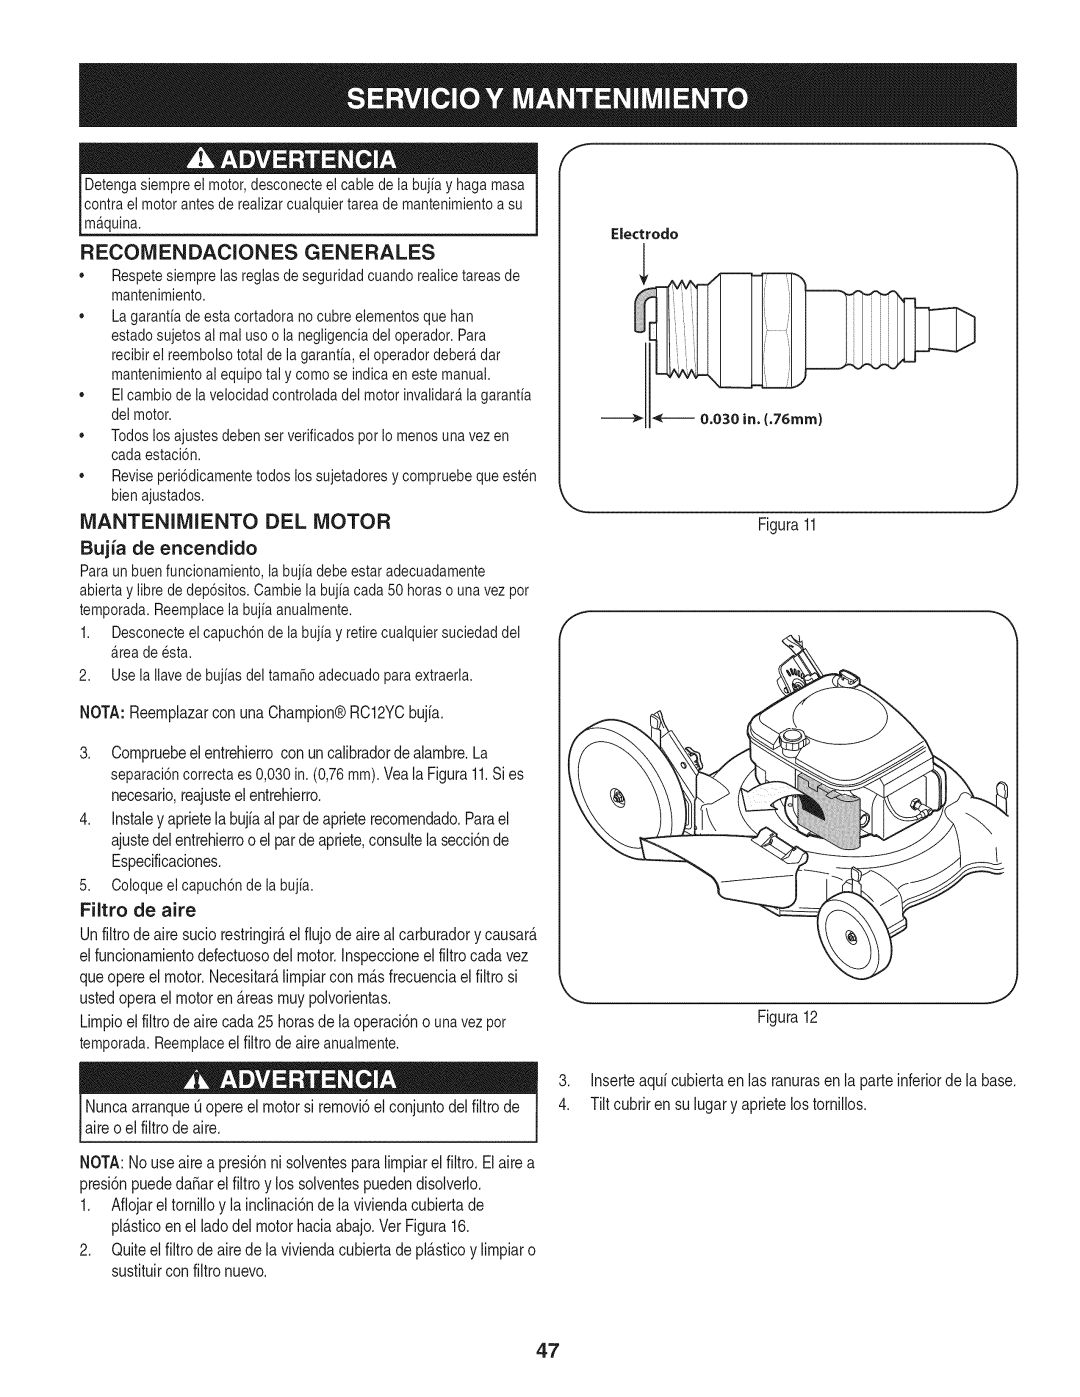 Craftsman 247.38528 manual Reconiendaciones Generales, Iviantenimiento Del Motor, Filtro de aire 